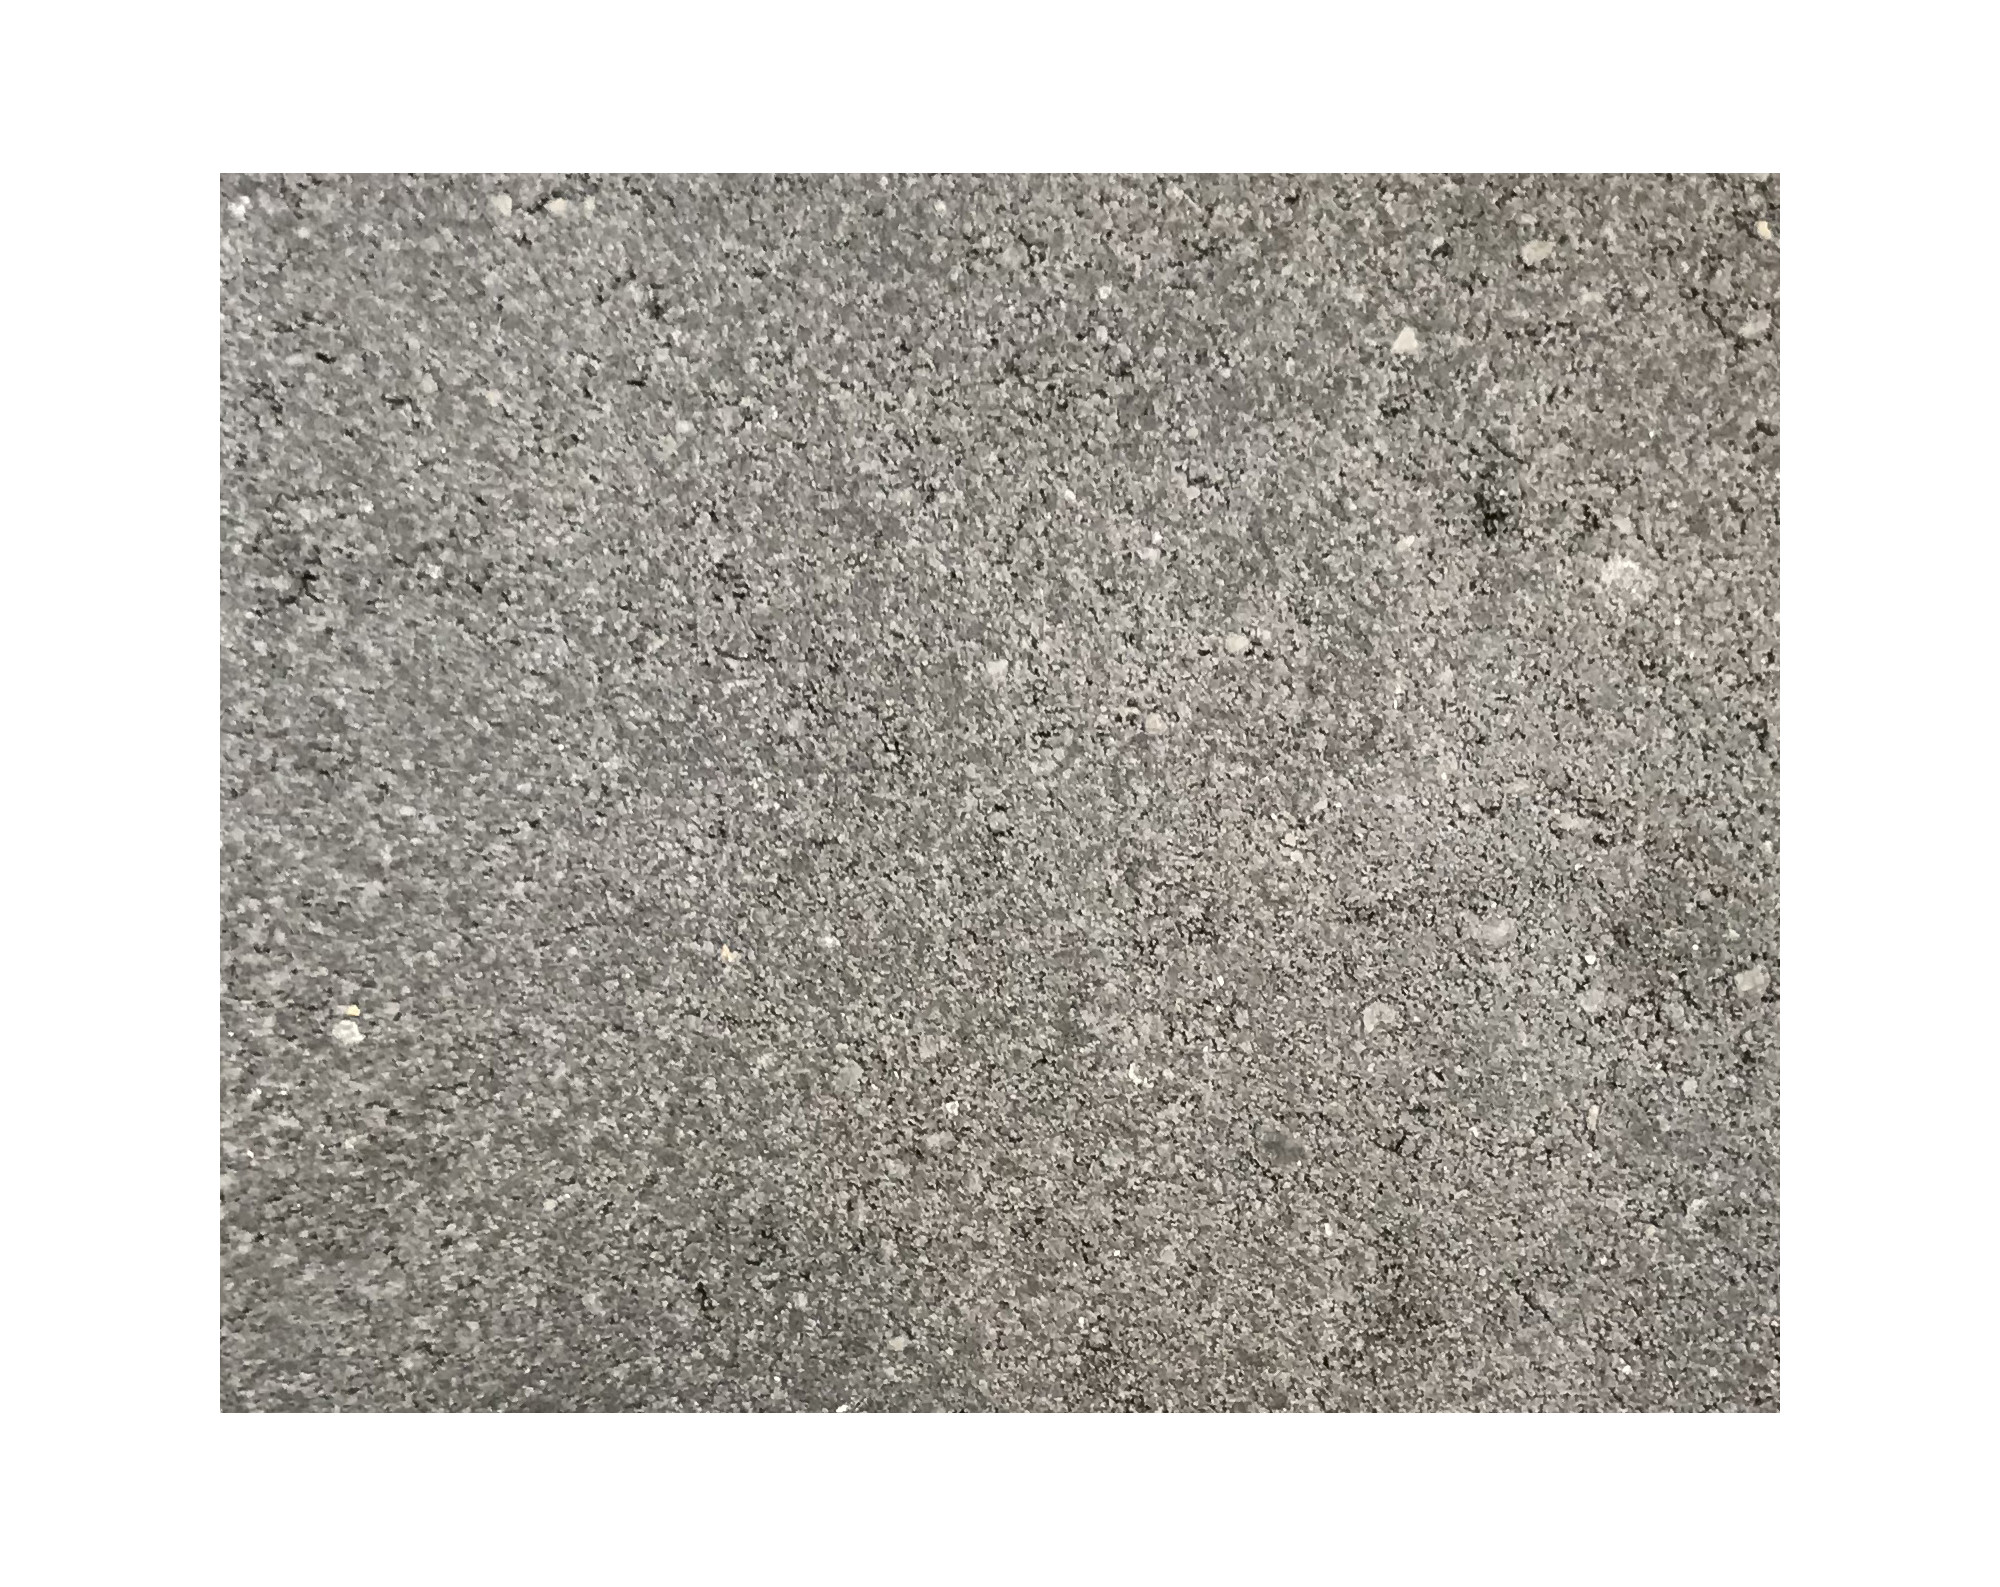 Harmo roc athenset, rustica-serie, ovaal d: 4,20mx8,20m, a.zwart, beton